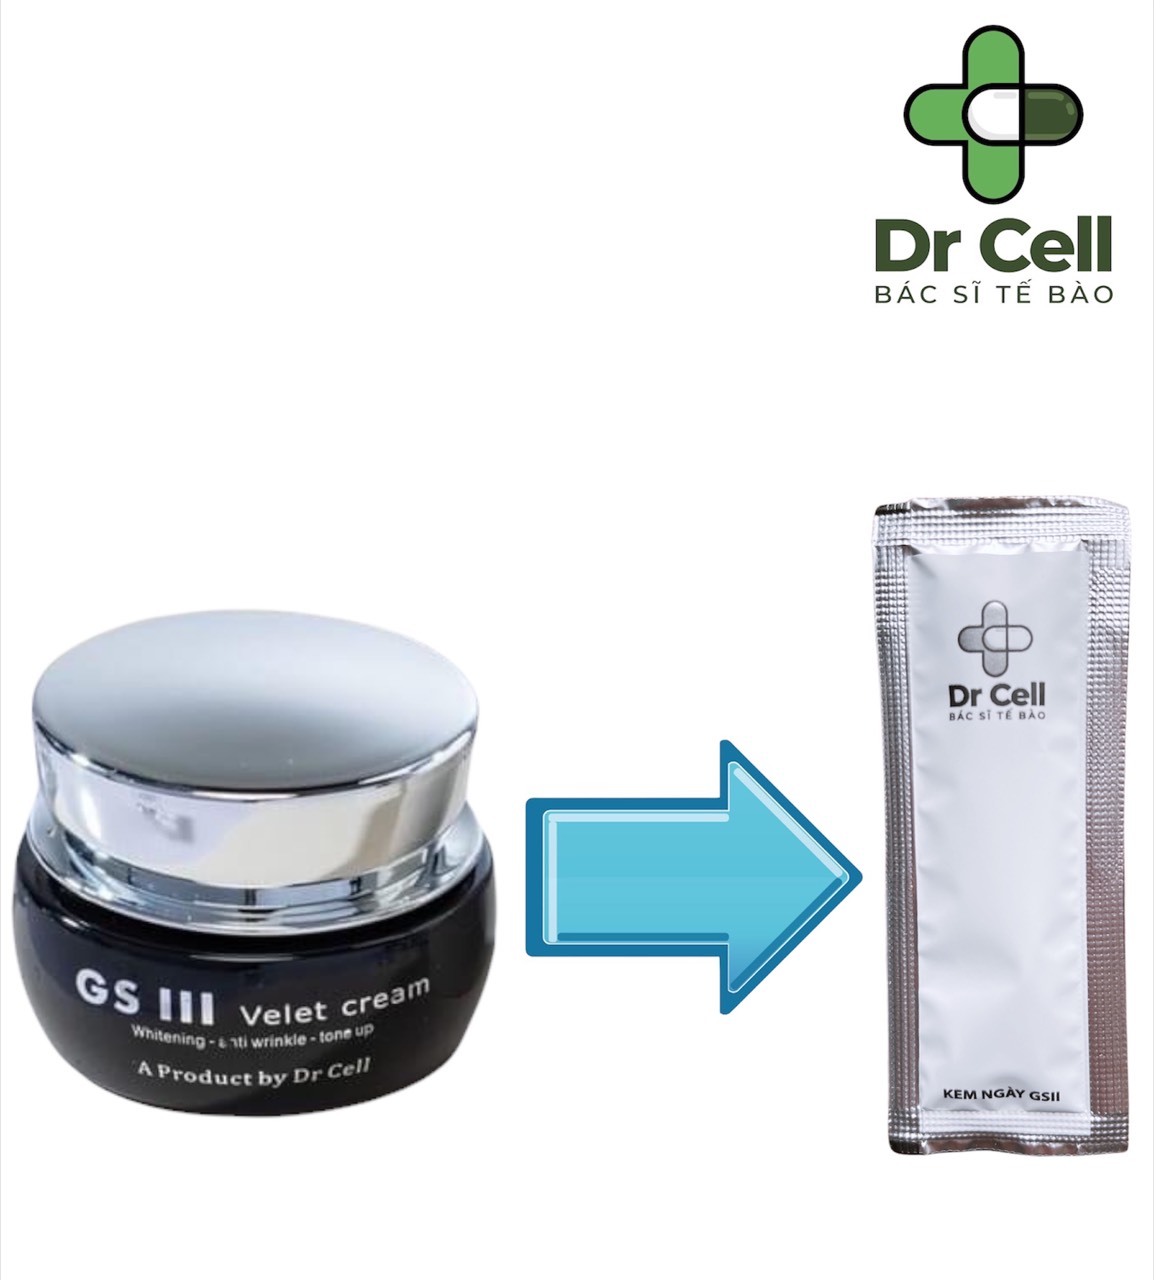 Set 5 gói dưỡng mini dùng thử DR CELL